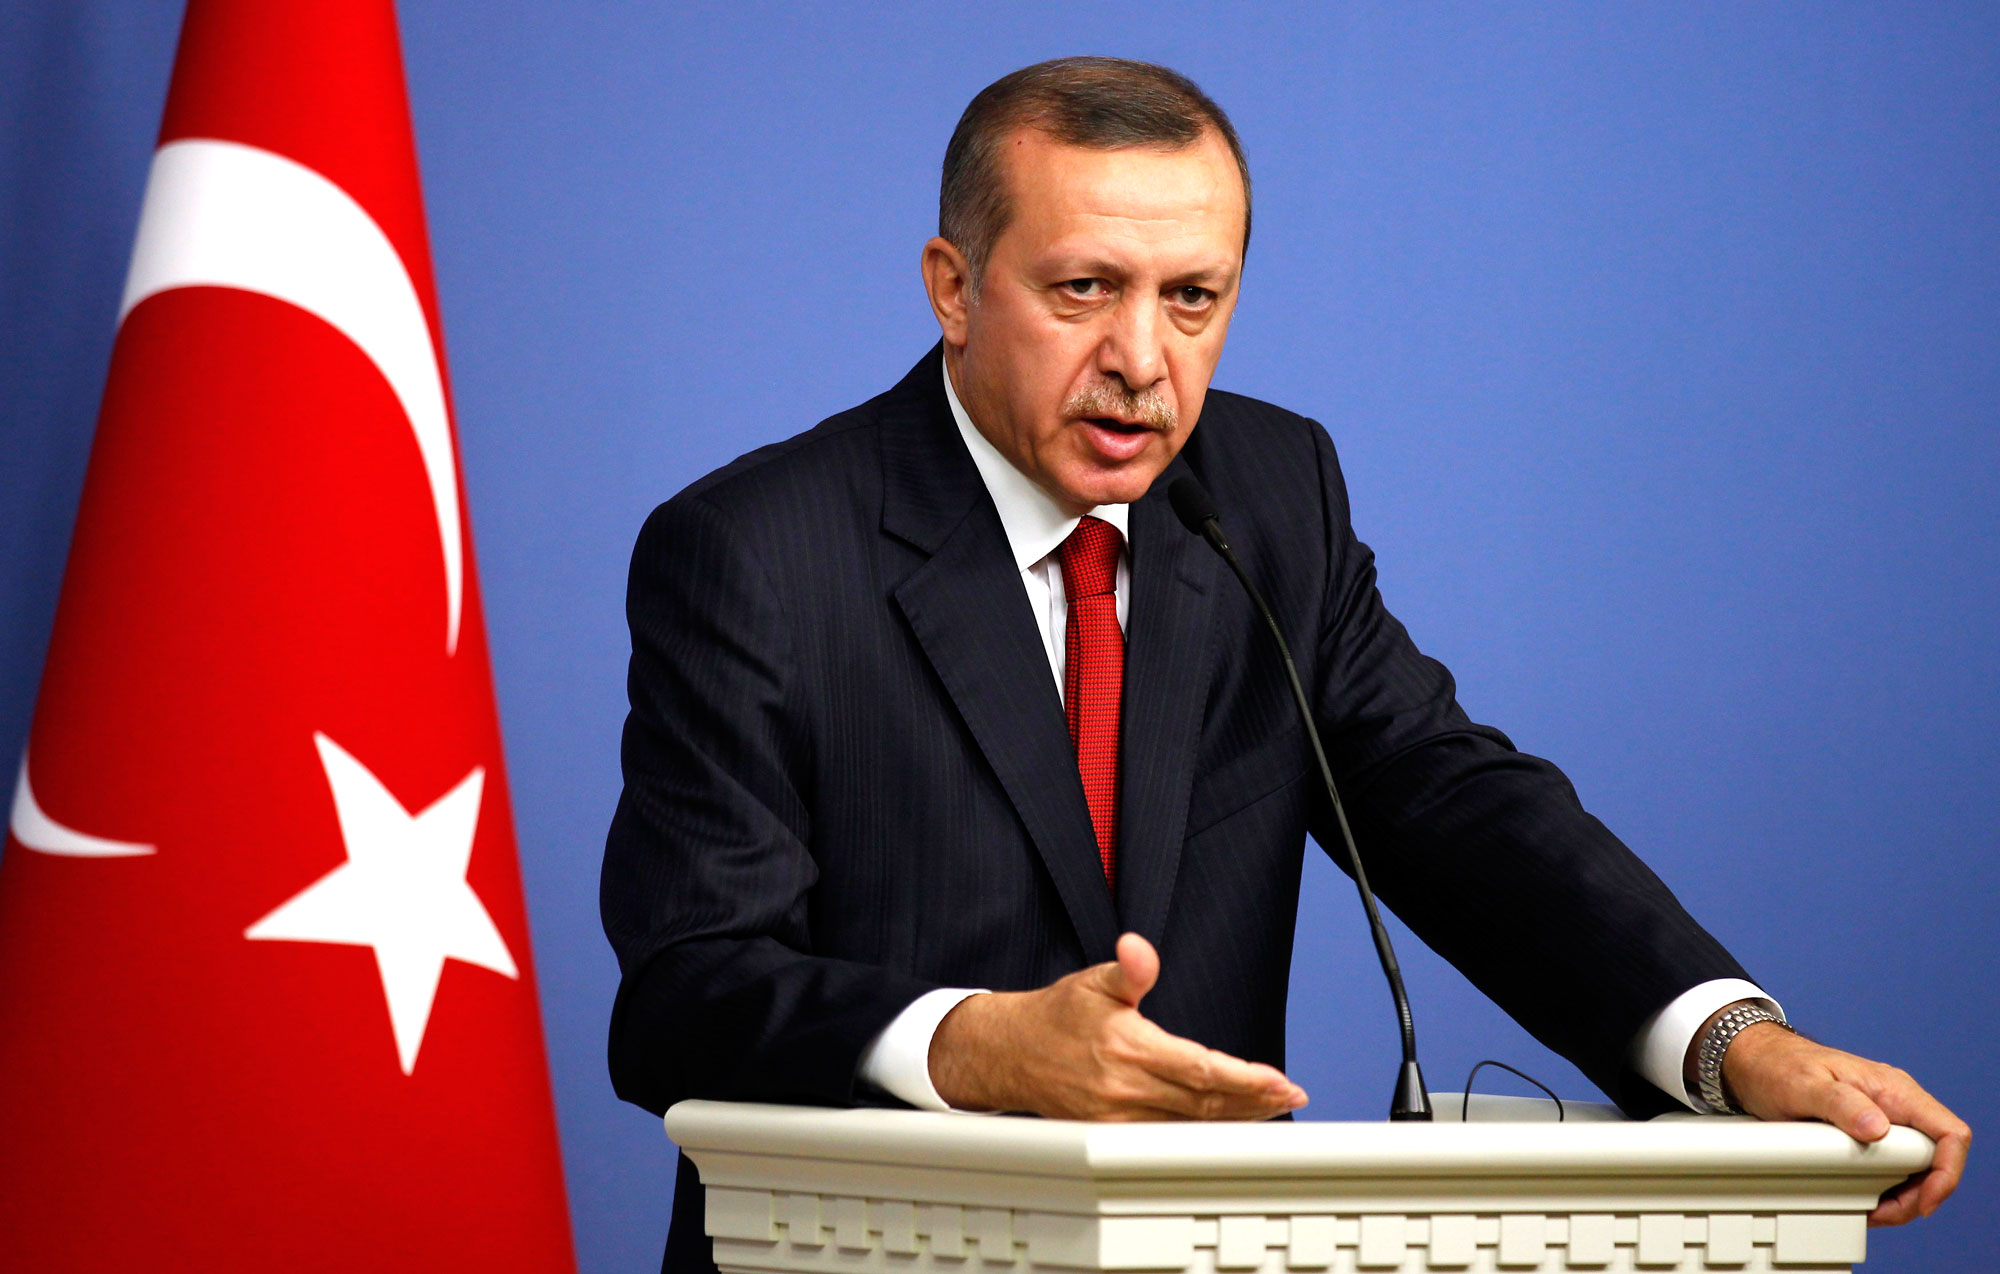 Ερντογάν: “Οι ΗΠΑ δεν τηρούν τις περισσότερες από τις υποσχέσεις τους”